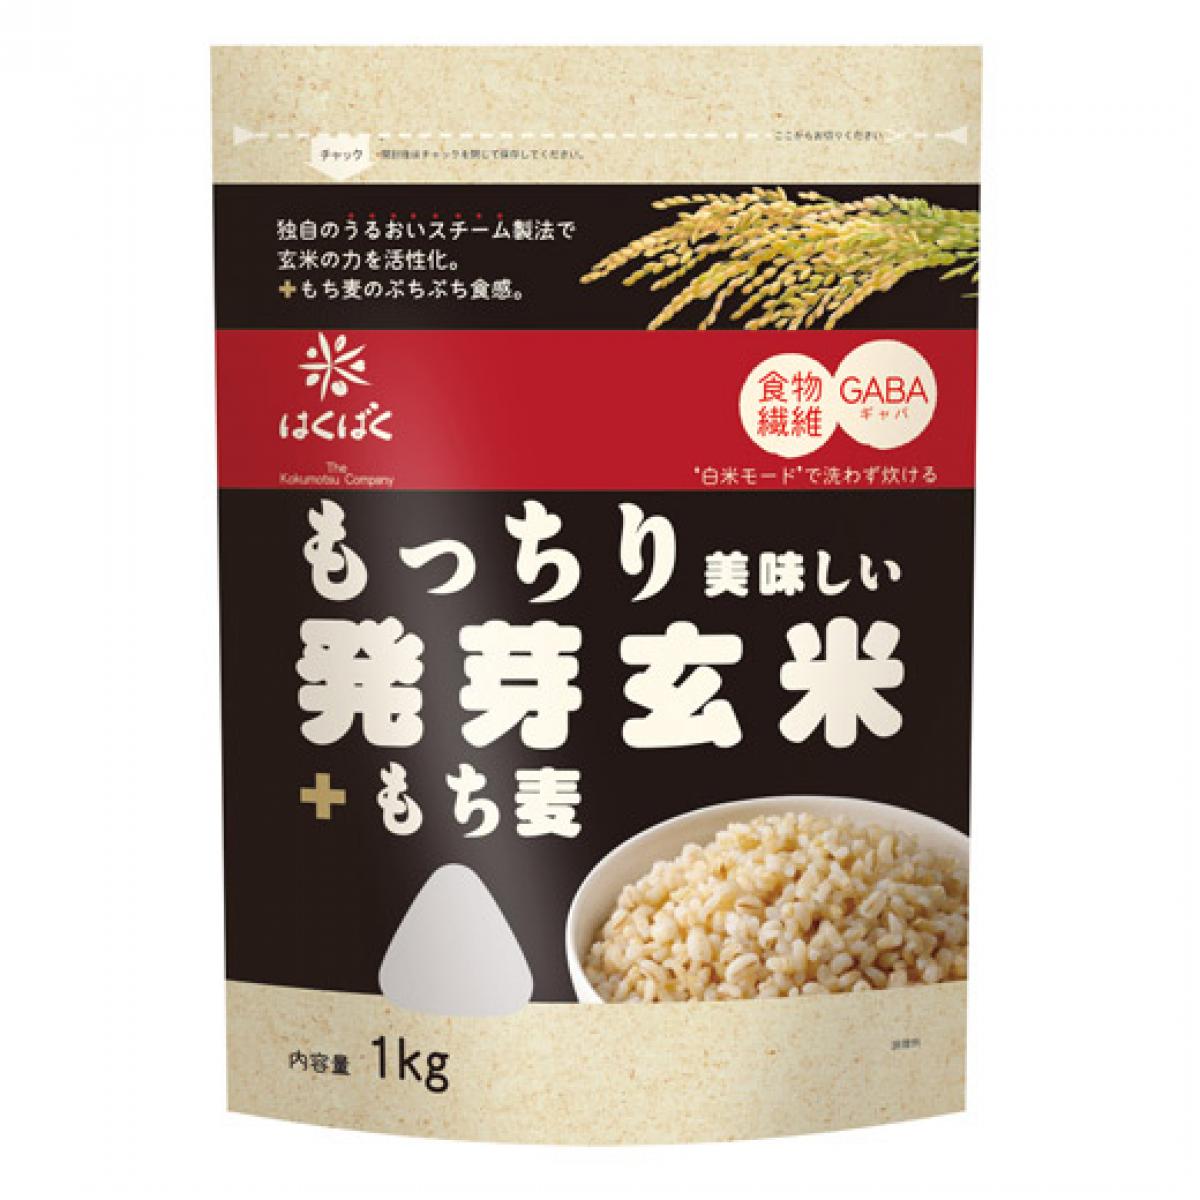 【在庫有・即納】はくばく もっちり美味しい発芽玄米 ＋ もち麦 1kg 食物繊維 GABA 雑穀米 もっちり 発芽玄米 食感 食べ応え お弁当 おにぎり